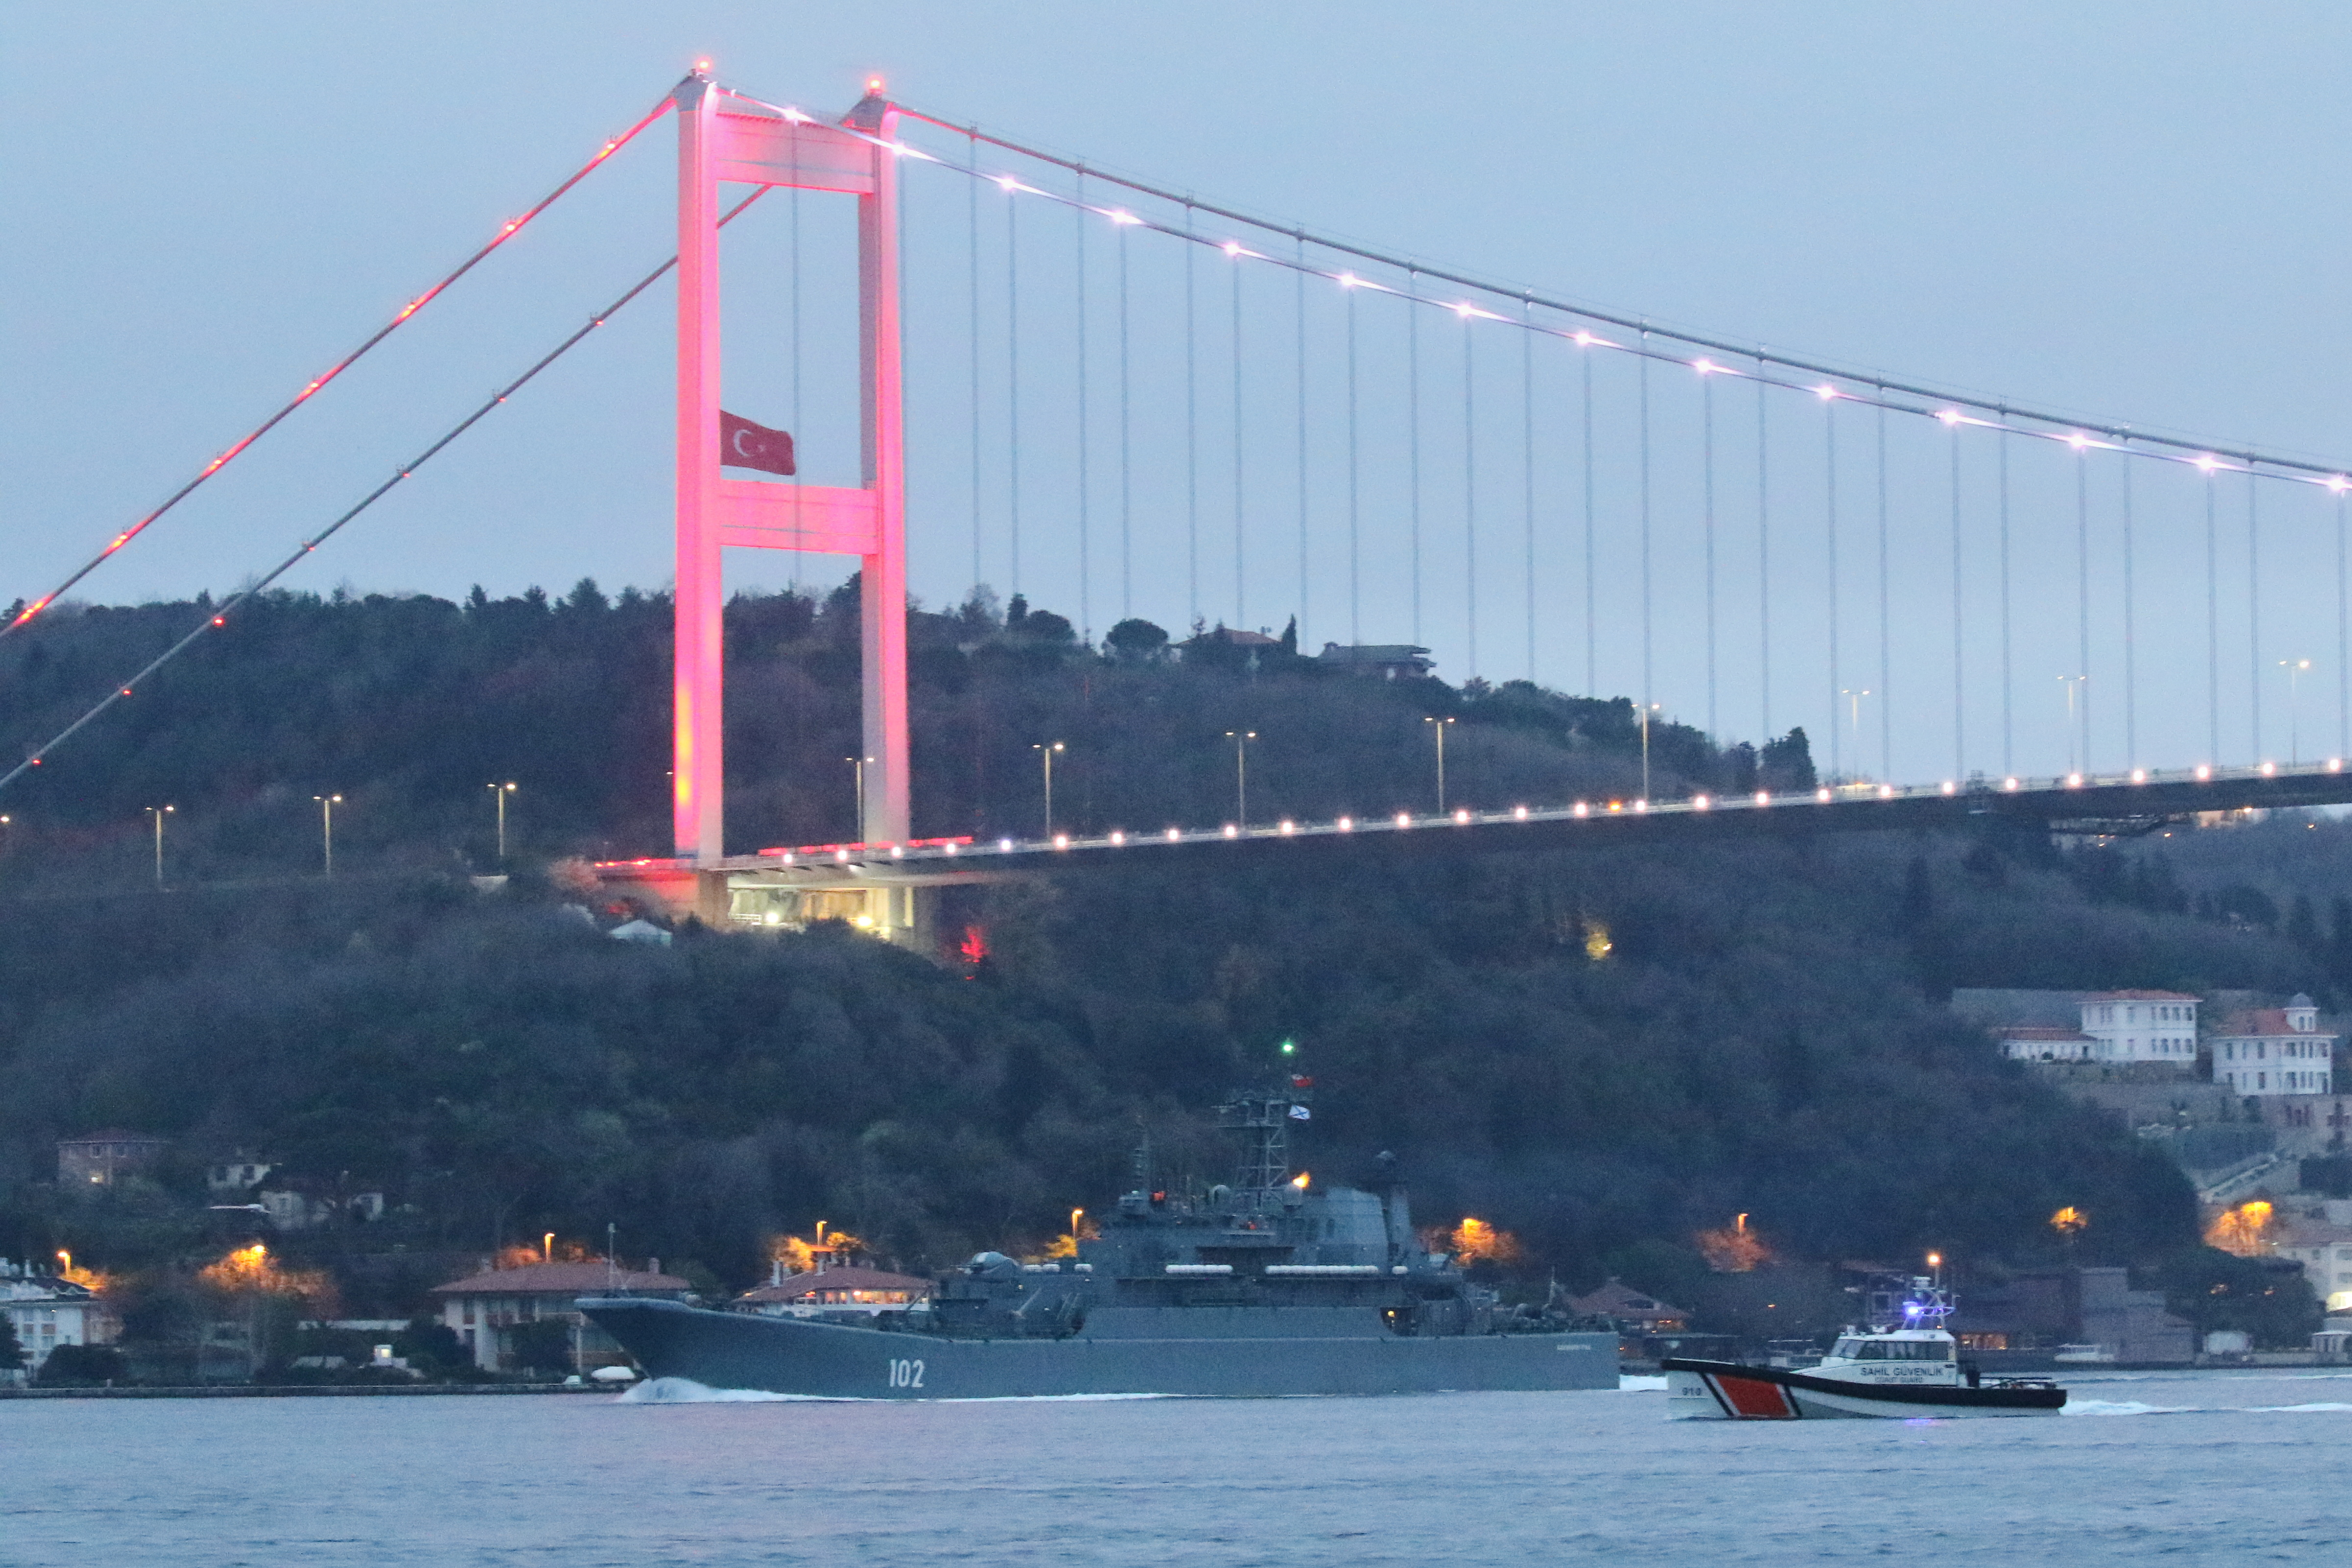 El buque de desembarco de la clase Ropucha de la Armada rusa Kaliningrado zarpa en el Bósforo, rumbo al Mar Negro, en Estambul, Turquía, el 17 de abril de 2021. (REUTERS/Murad Sezer)